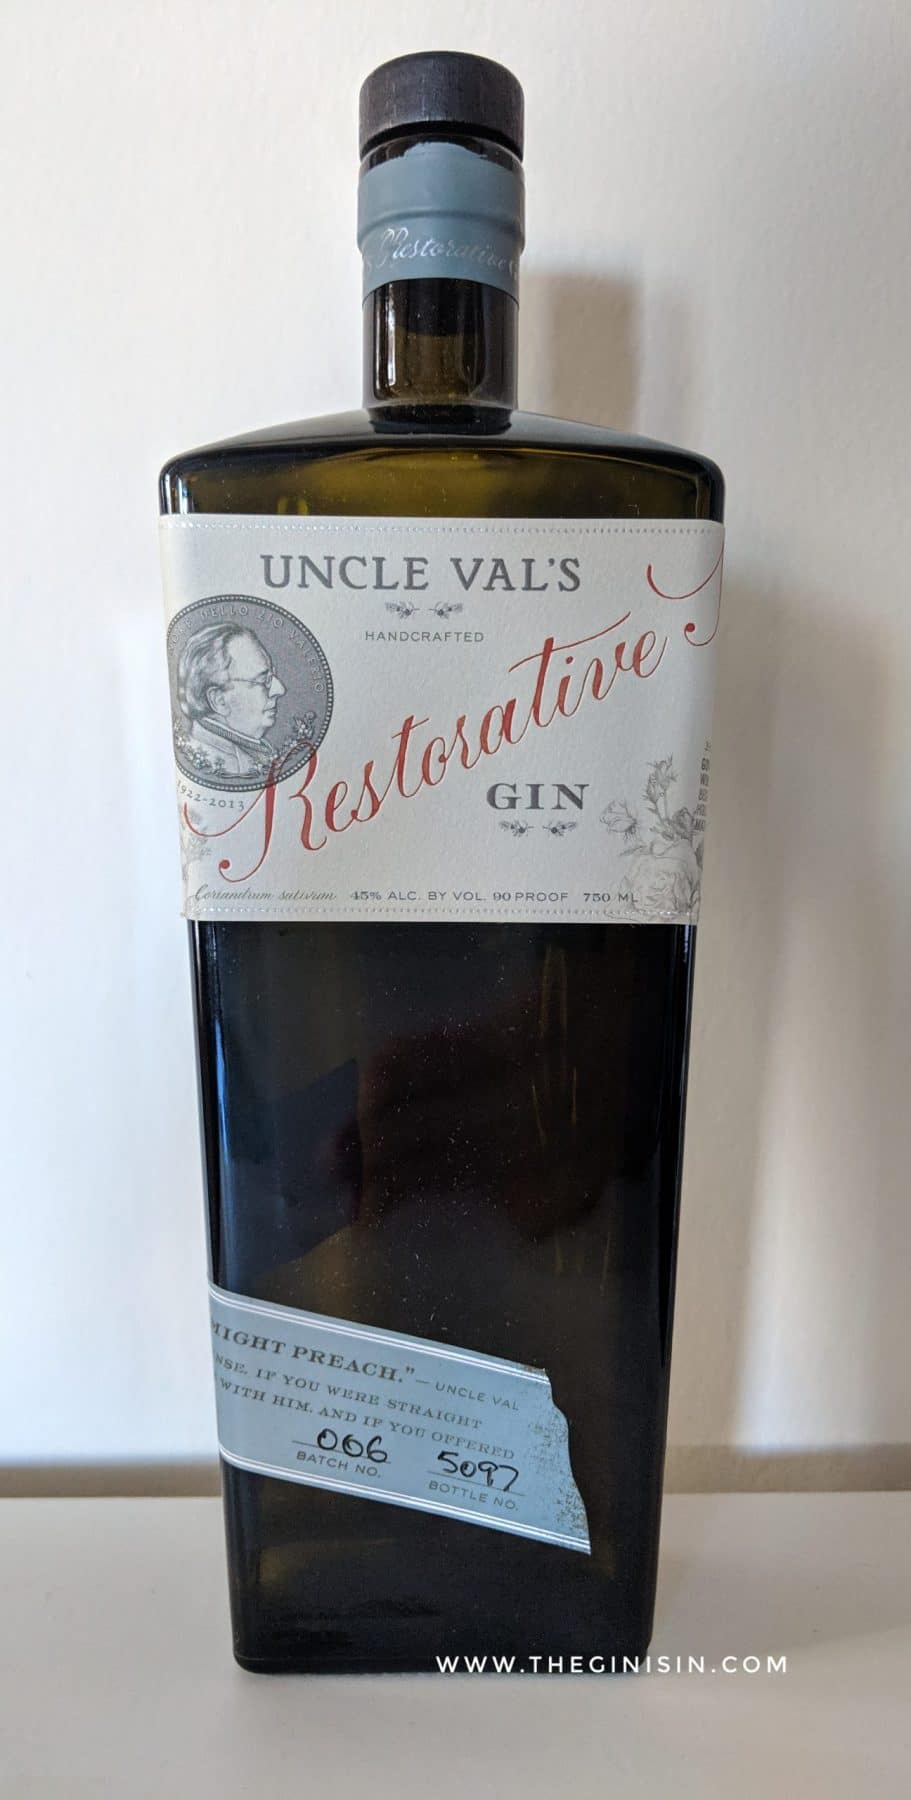 UncleValsRestorativeGin 856442005017 - Franklin Wine & Spirits